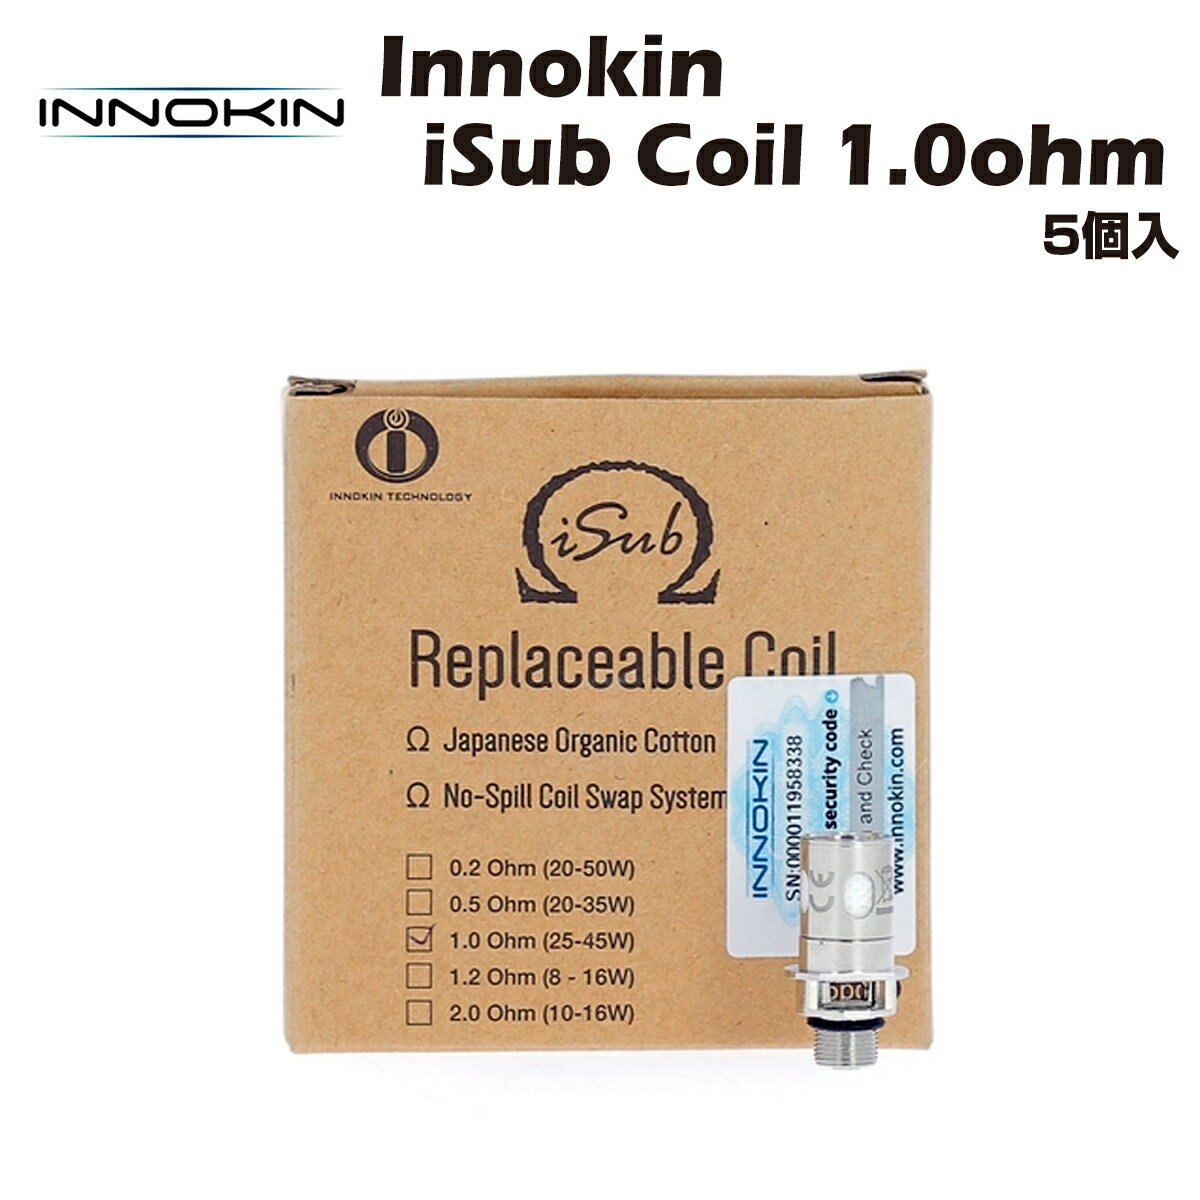 日本製オーガニックコットン/1.0Ωカンタルコイルを使用したInnokin純正コイル/アトマイザーヘッドです。 全てのInnokin iSub アトマイザー シリーズに対応します。 仕様 抵抗値 1.0Ω 推奨ワッテージ 25~45W 内容 Innokin iSub Coil Kanthal 1.0Ω×5